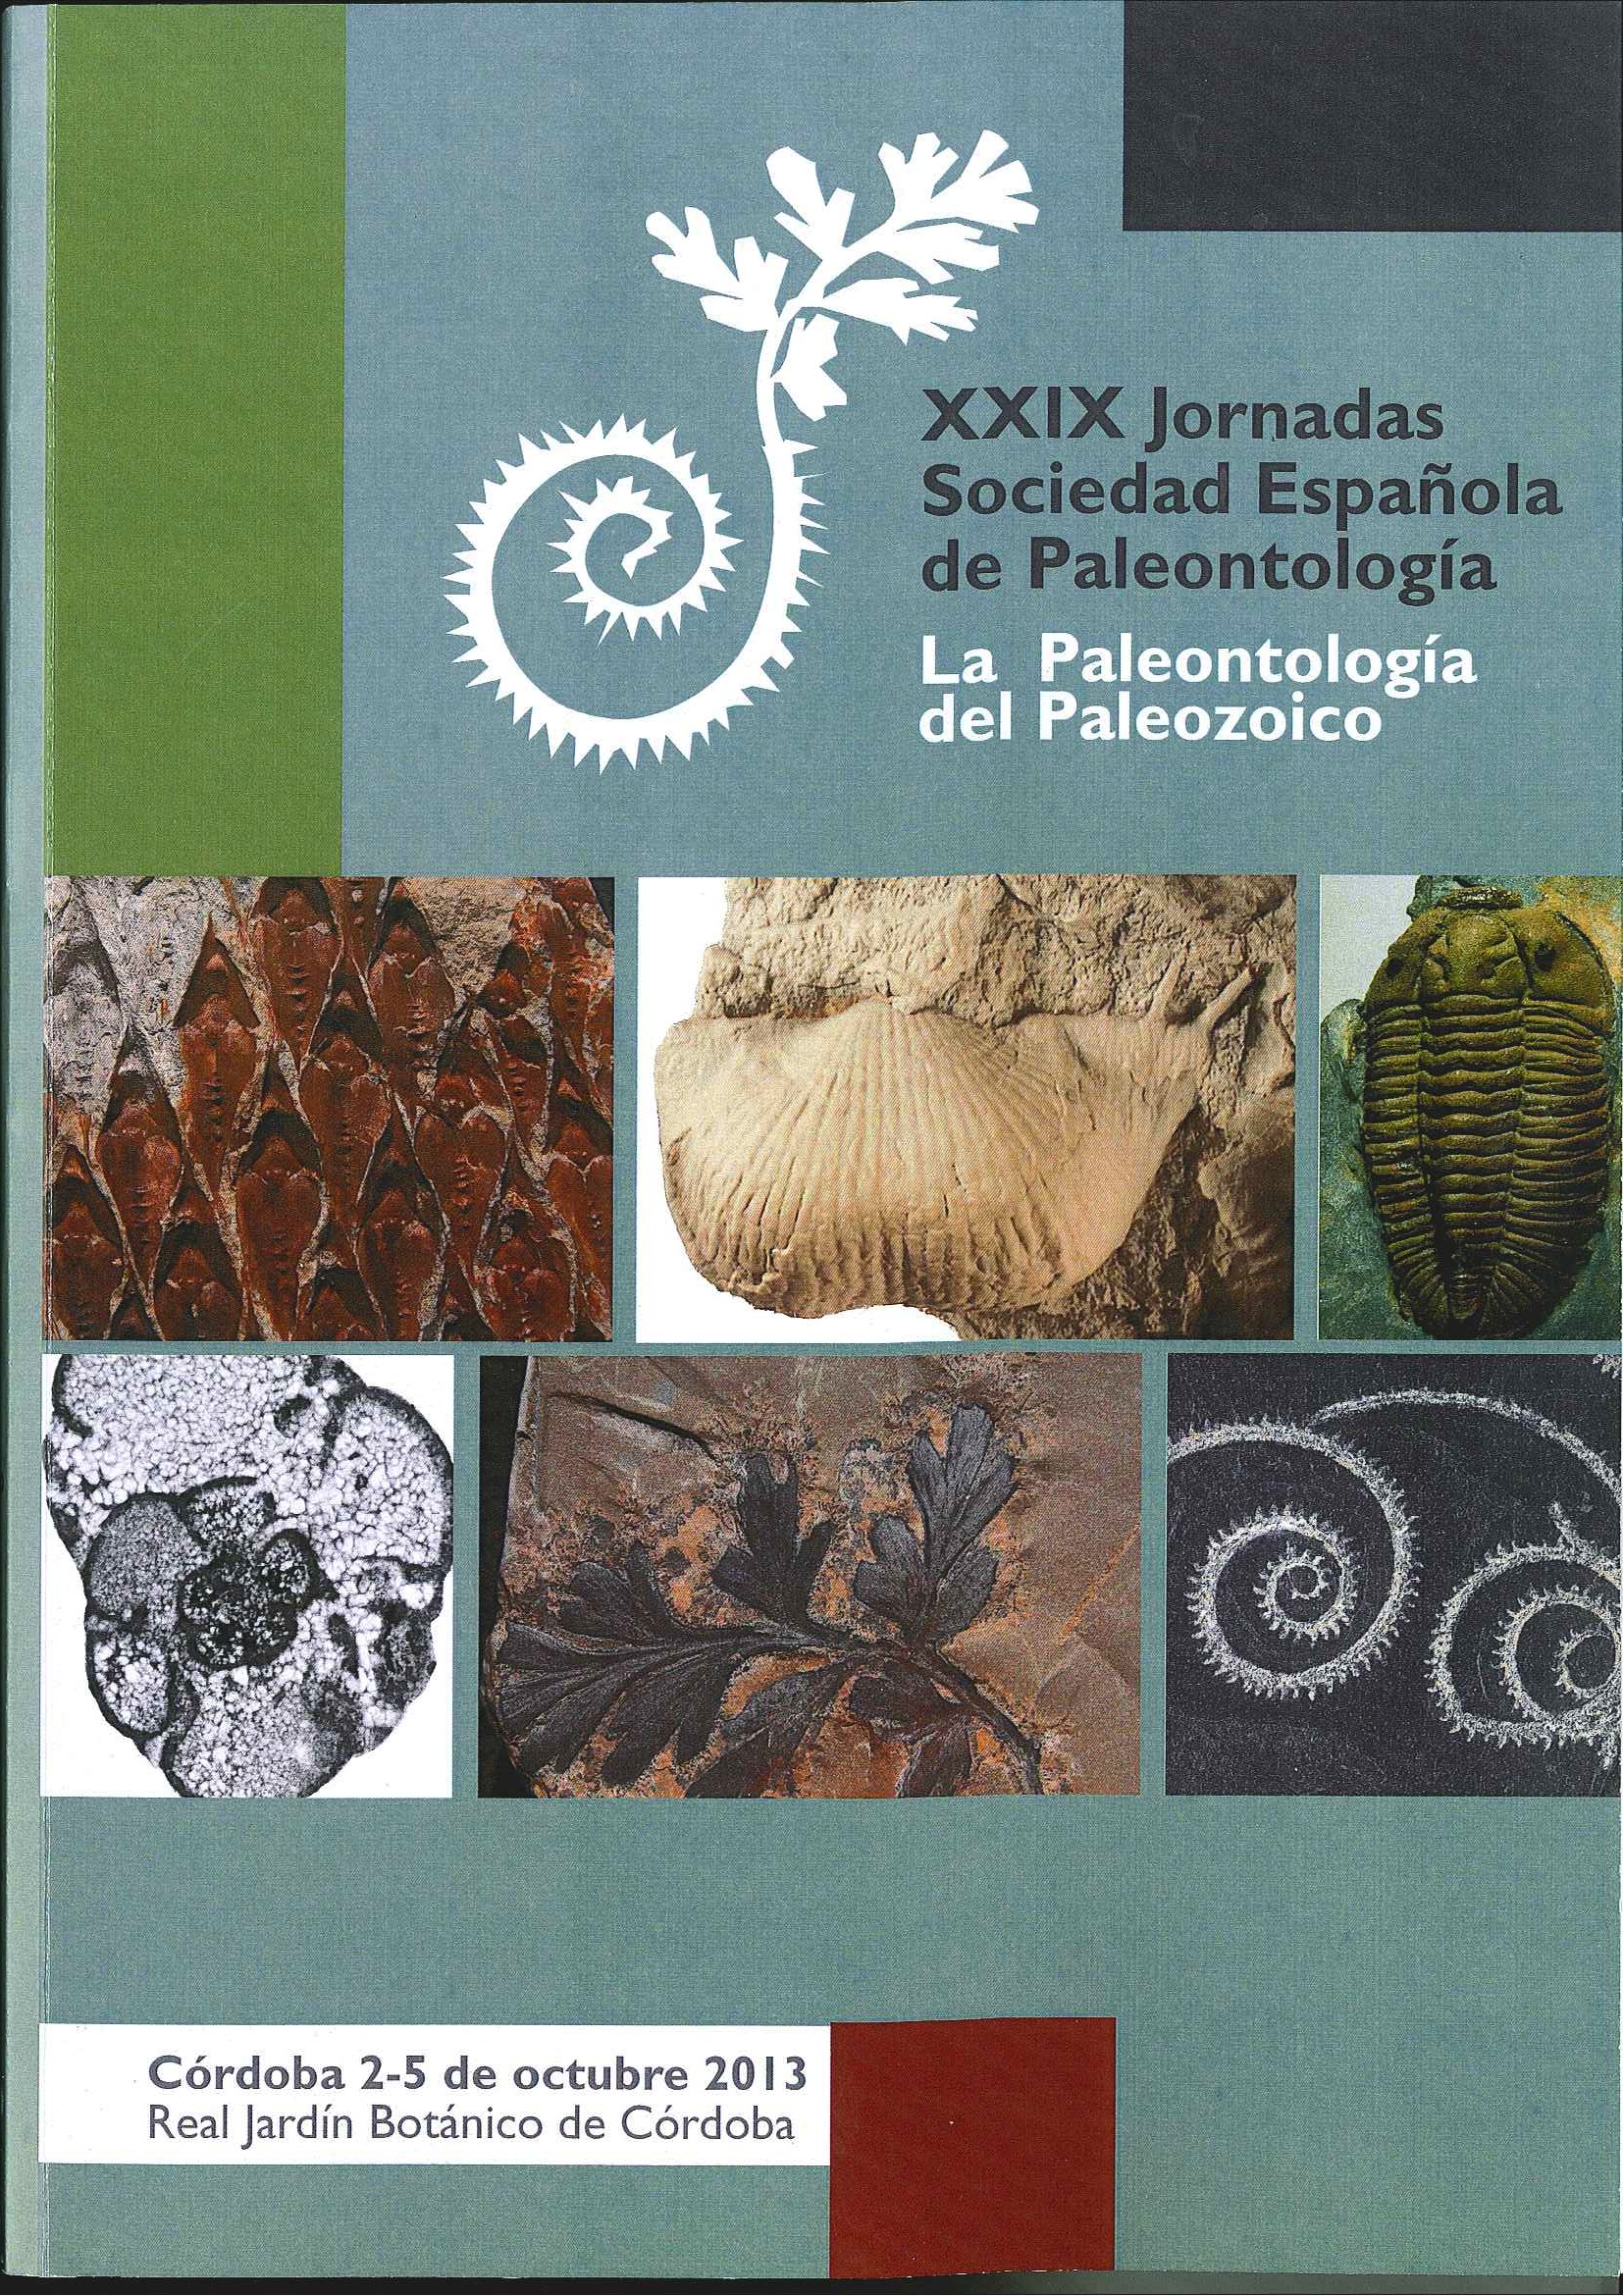 XXIX Jornadas Paleontología.jpg